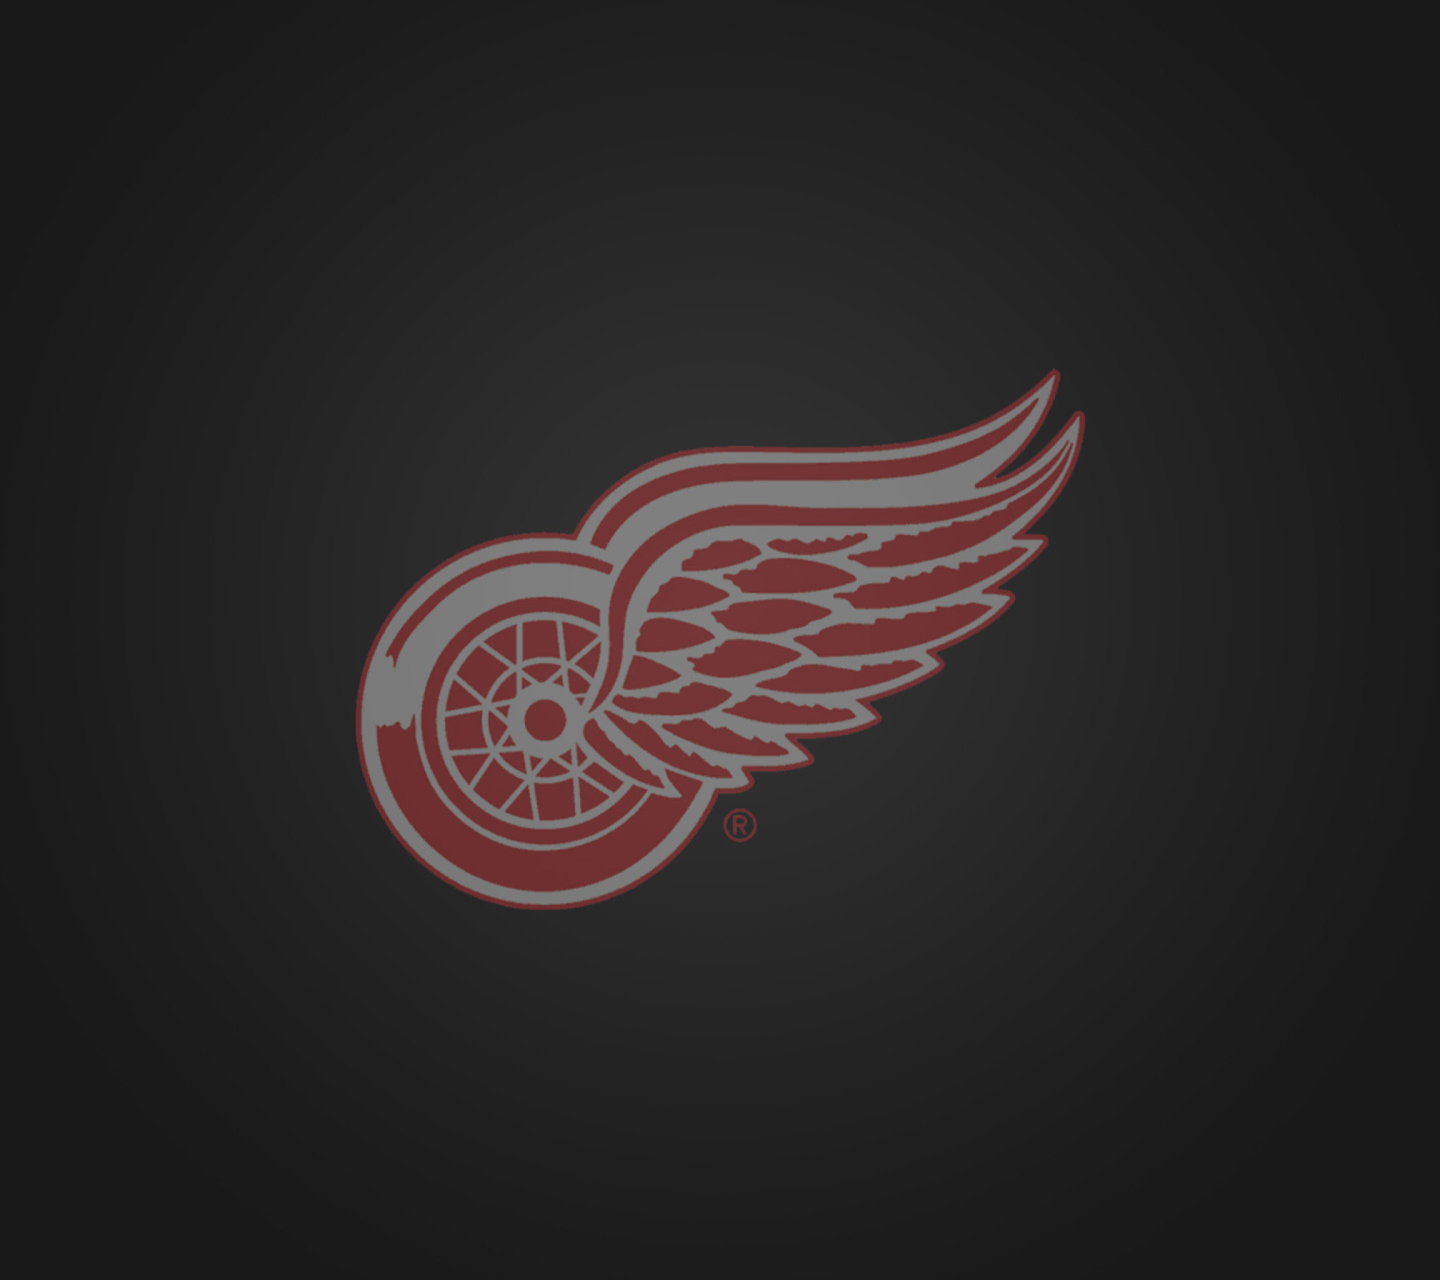 Fondo de pantalla Detroit Red Wings 1440x1280